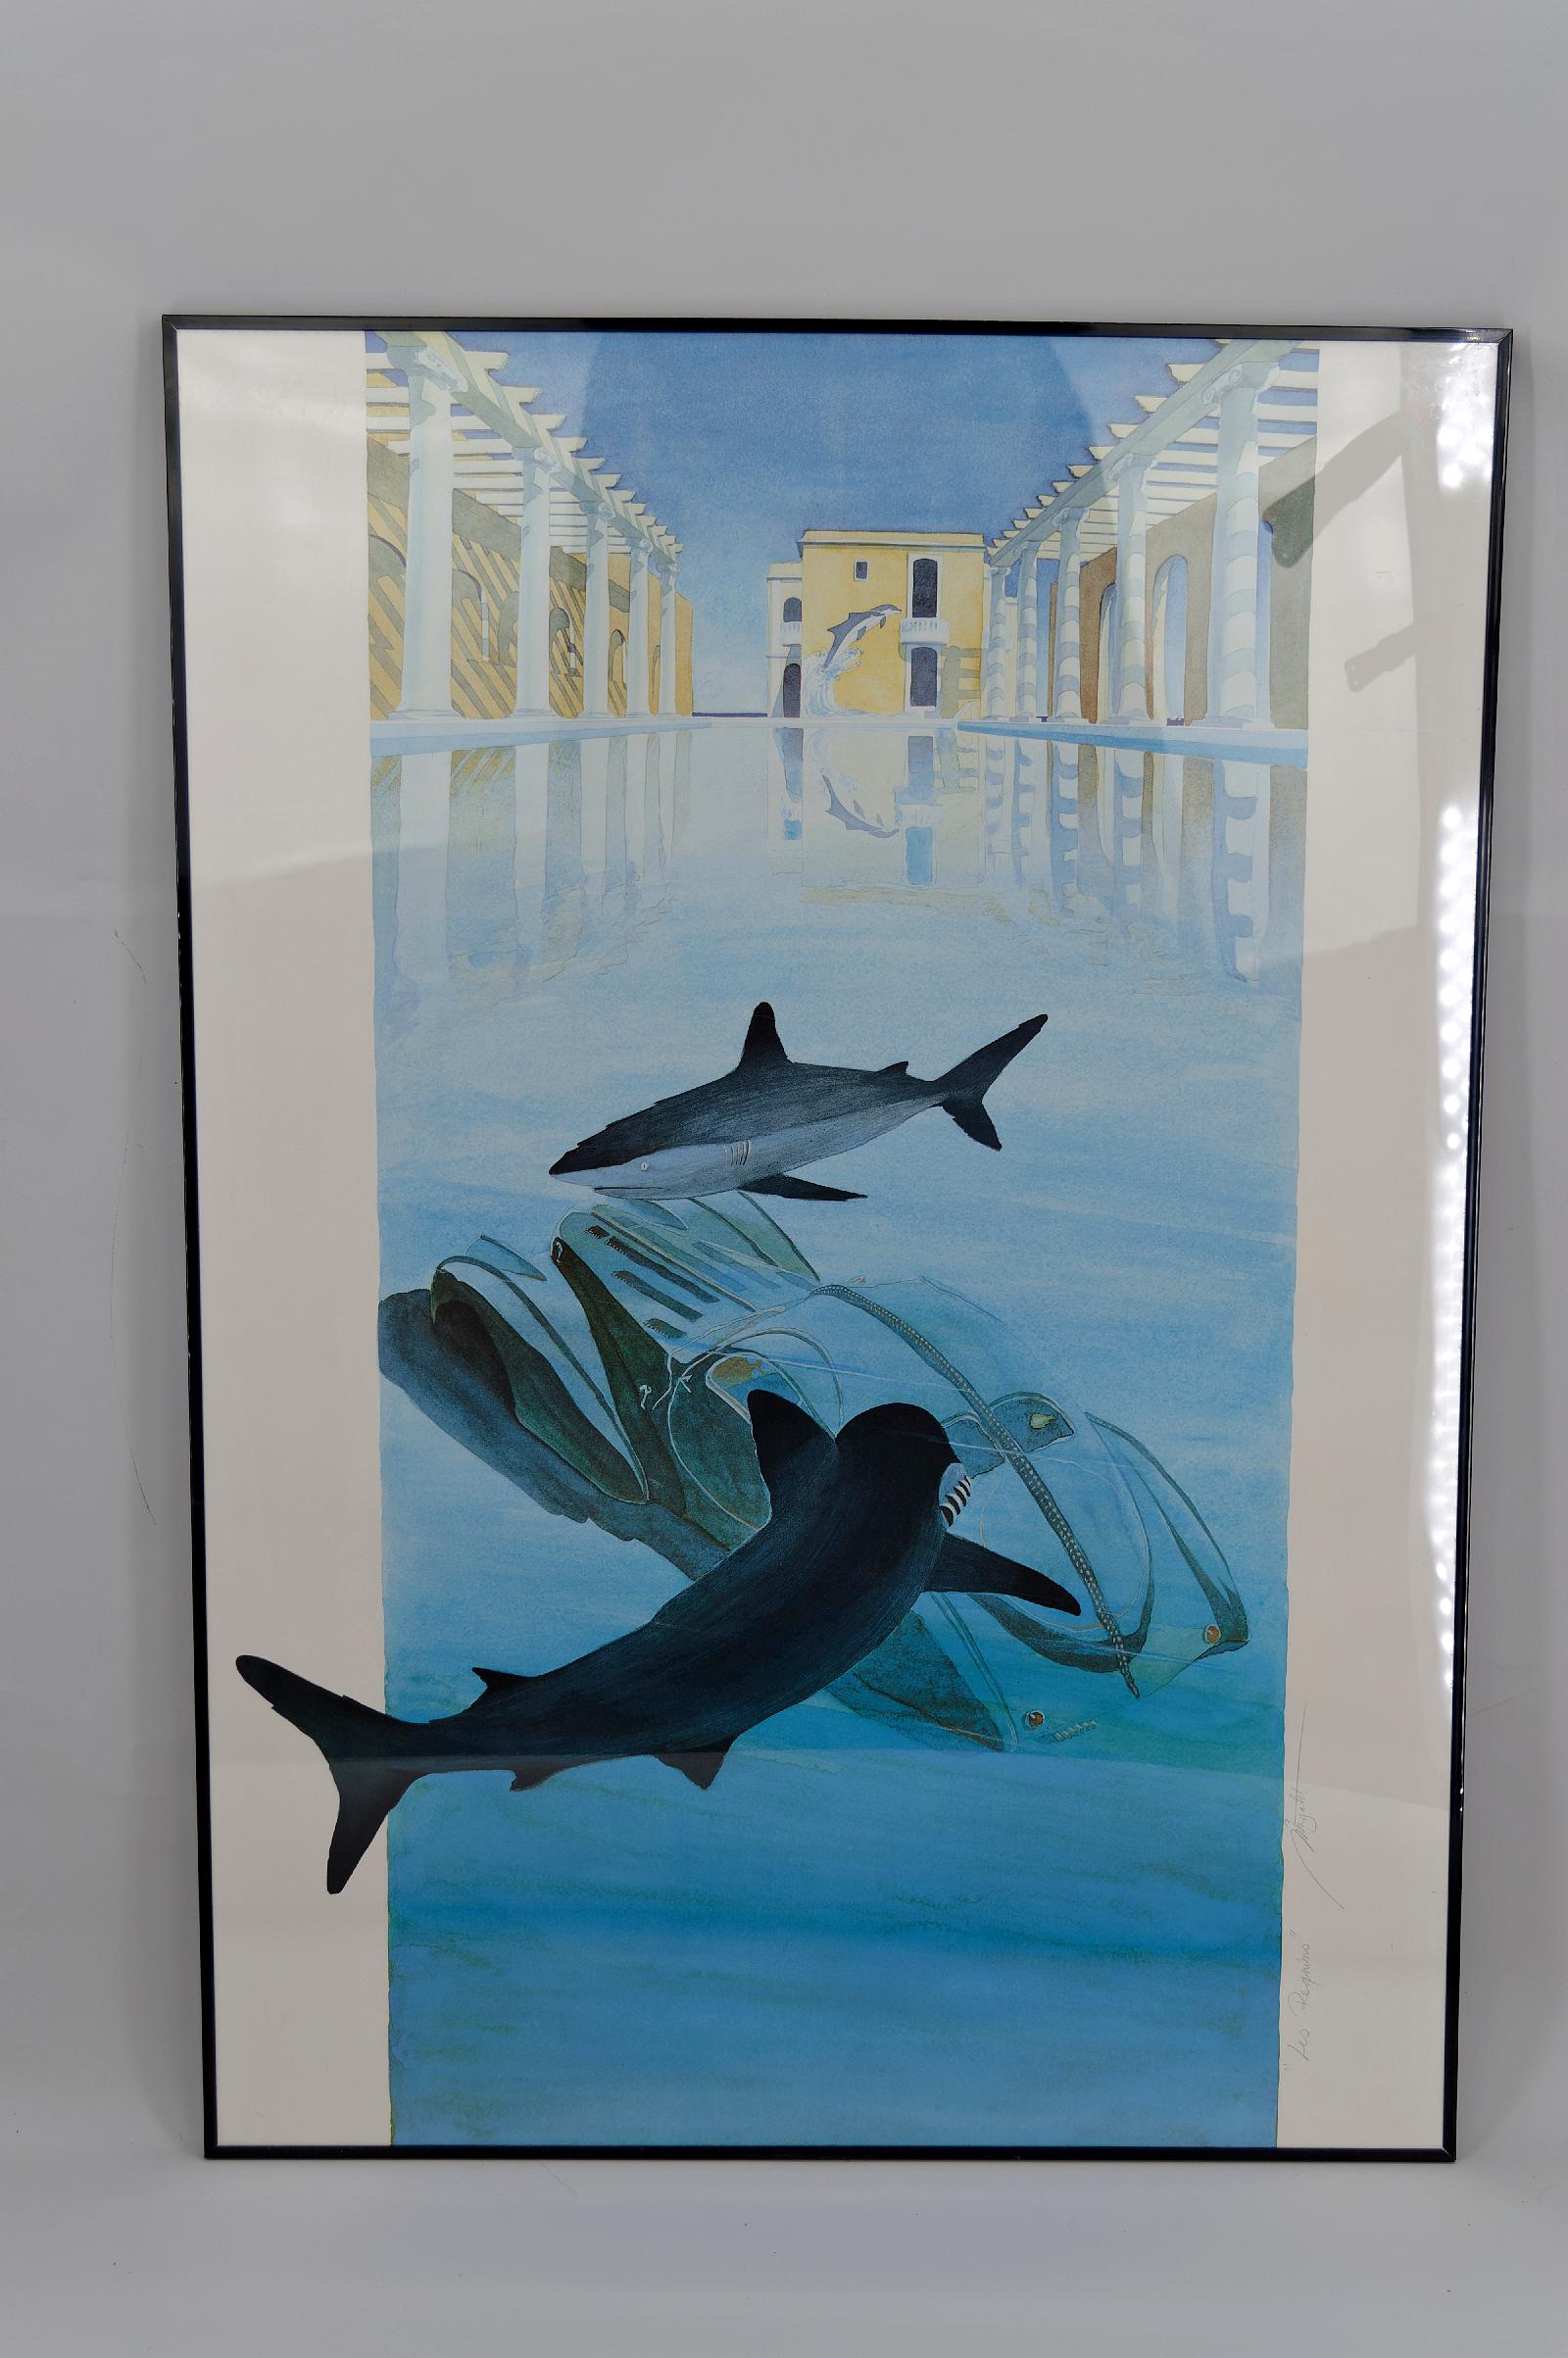 Hervorragend gerahmte Lithografie, die ein von Kolonnaden umgebenes Schwimmbad mit einem Paar Delphine darstellt, die im Hintergrund aus dem Wasser springen. Im Vordergrund sehen wir 2 Haie, die ein altes Auto (einen Bugatti Typ 57 Atlantic)